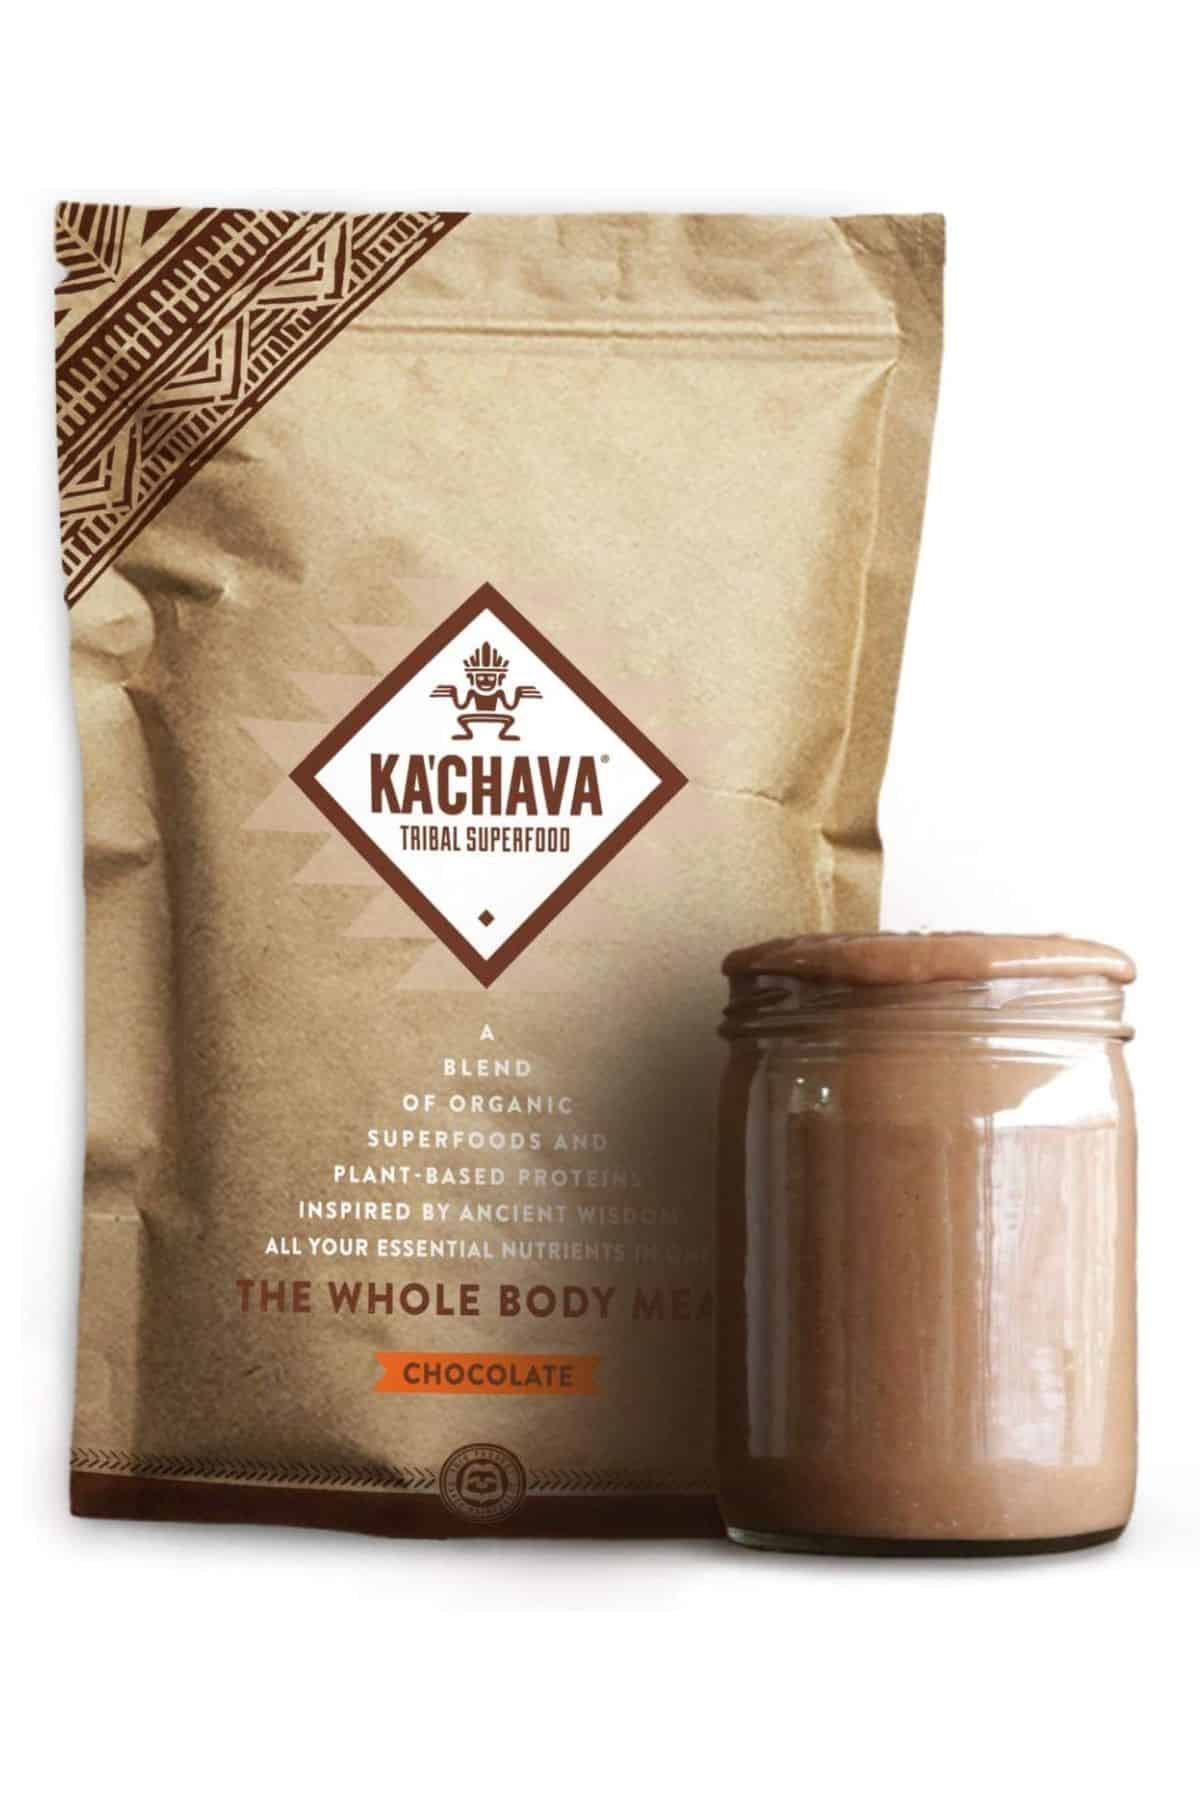 a bag of Ka'chava Tribal Superfood.